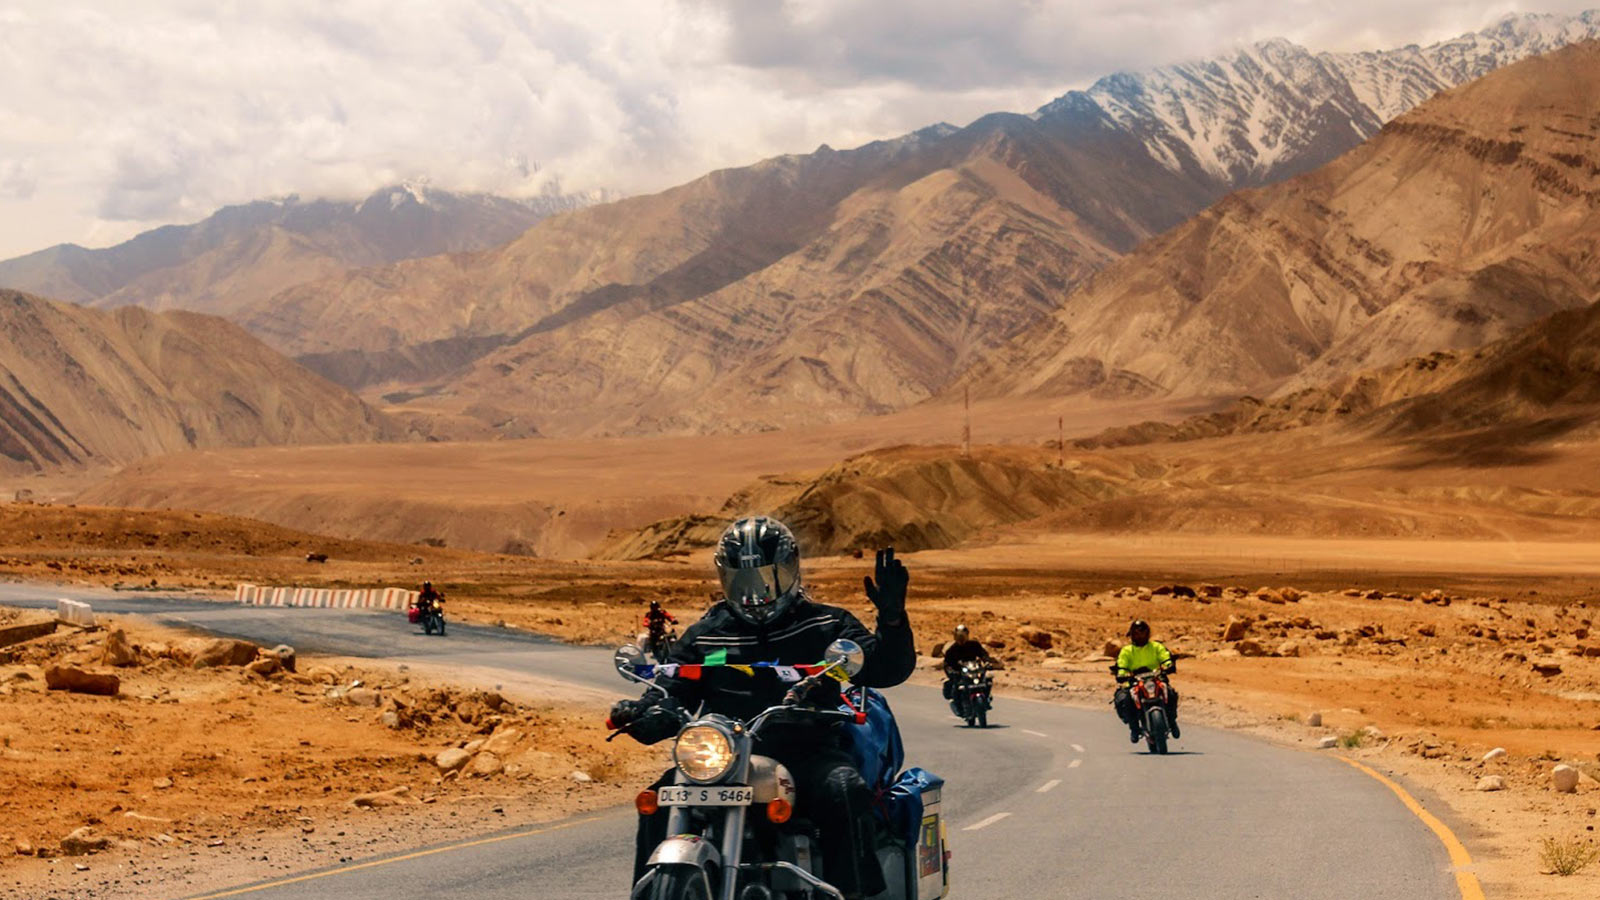 Ladakh Bike Trip - 1600x900 Wallpaper 